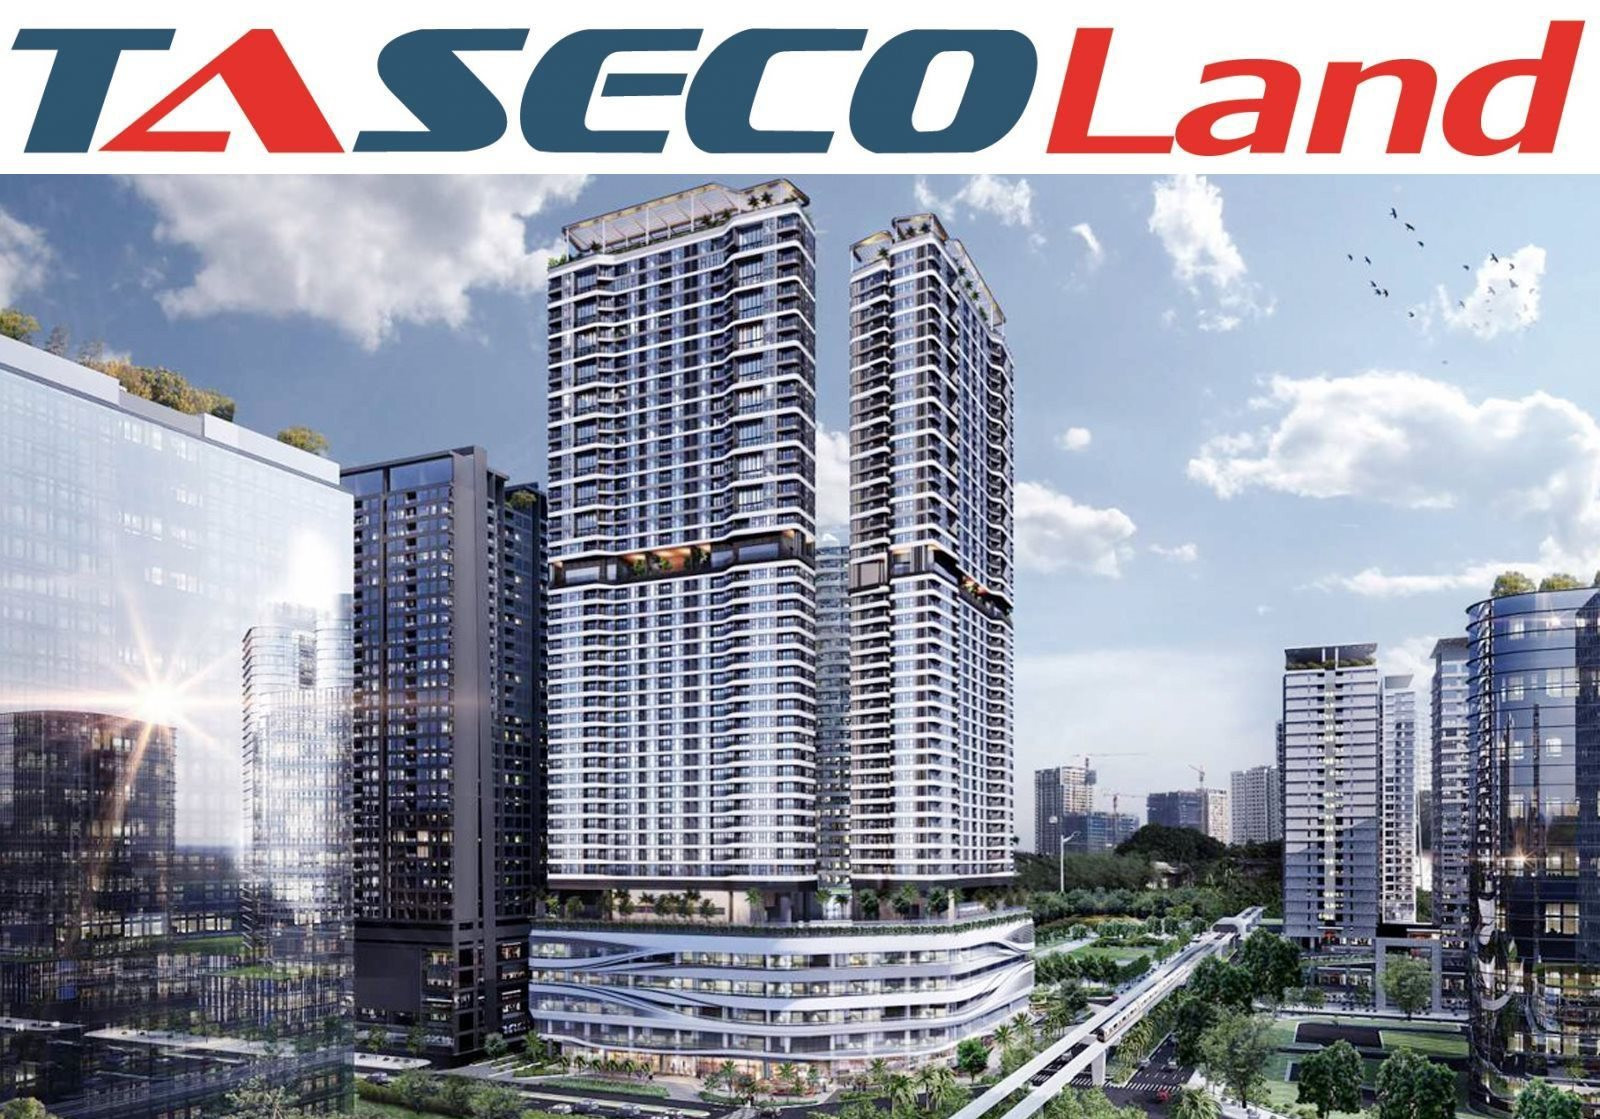 Taseco Land muốn làm dự án chung cư hơn 1.600 tỷ đồng tại Long Biên